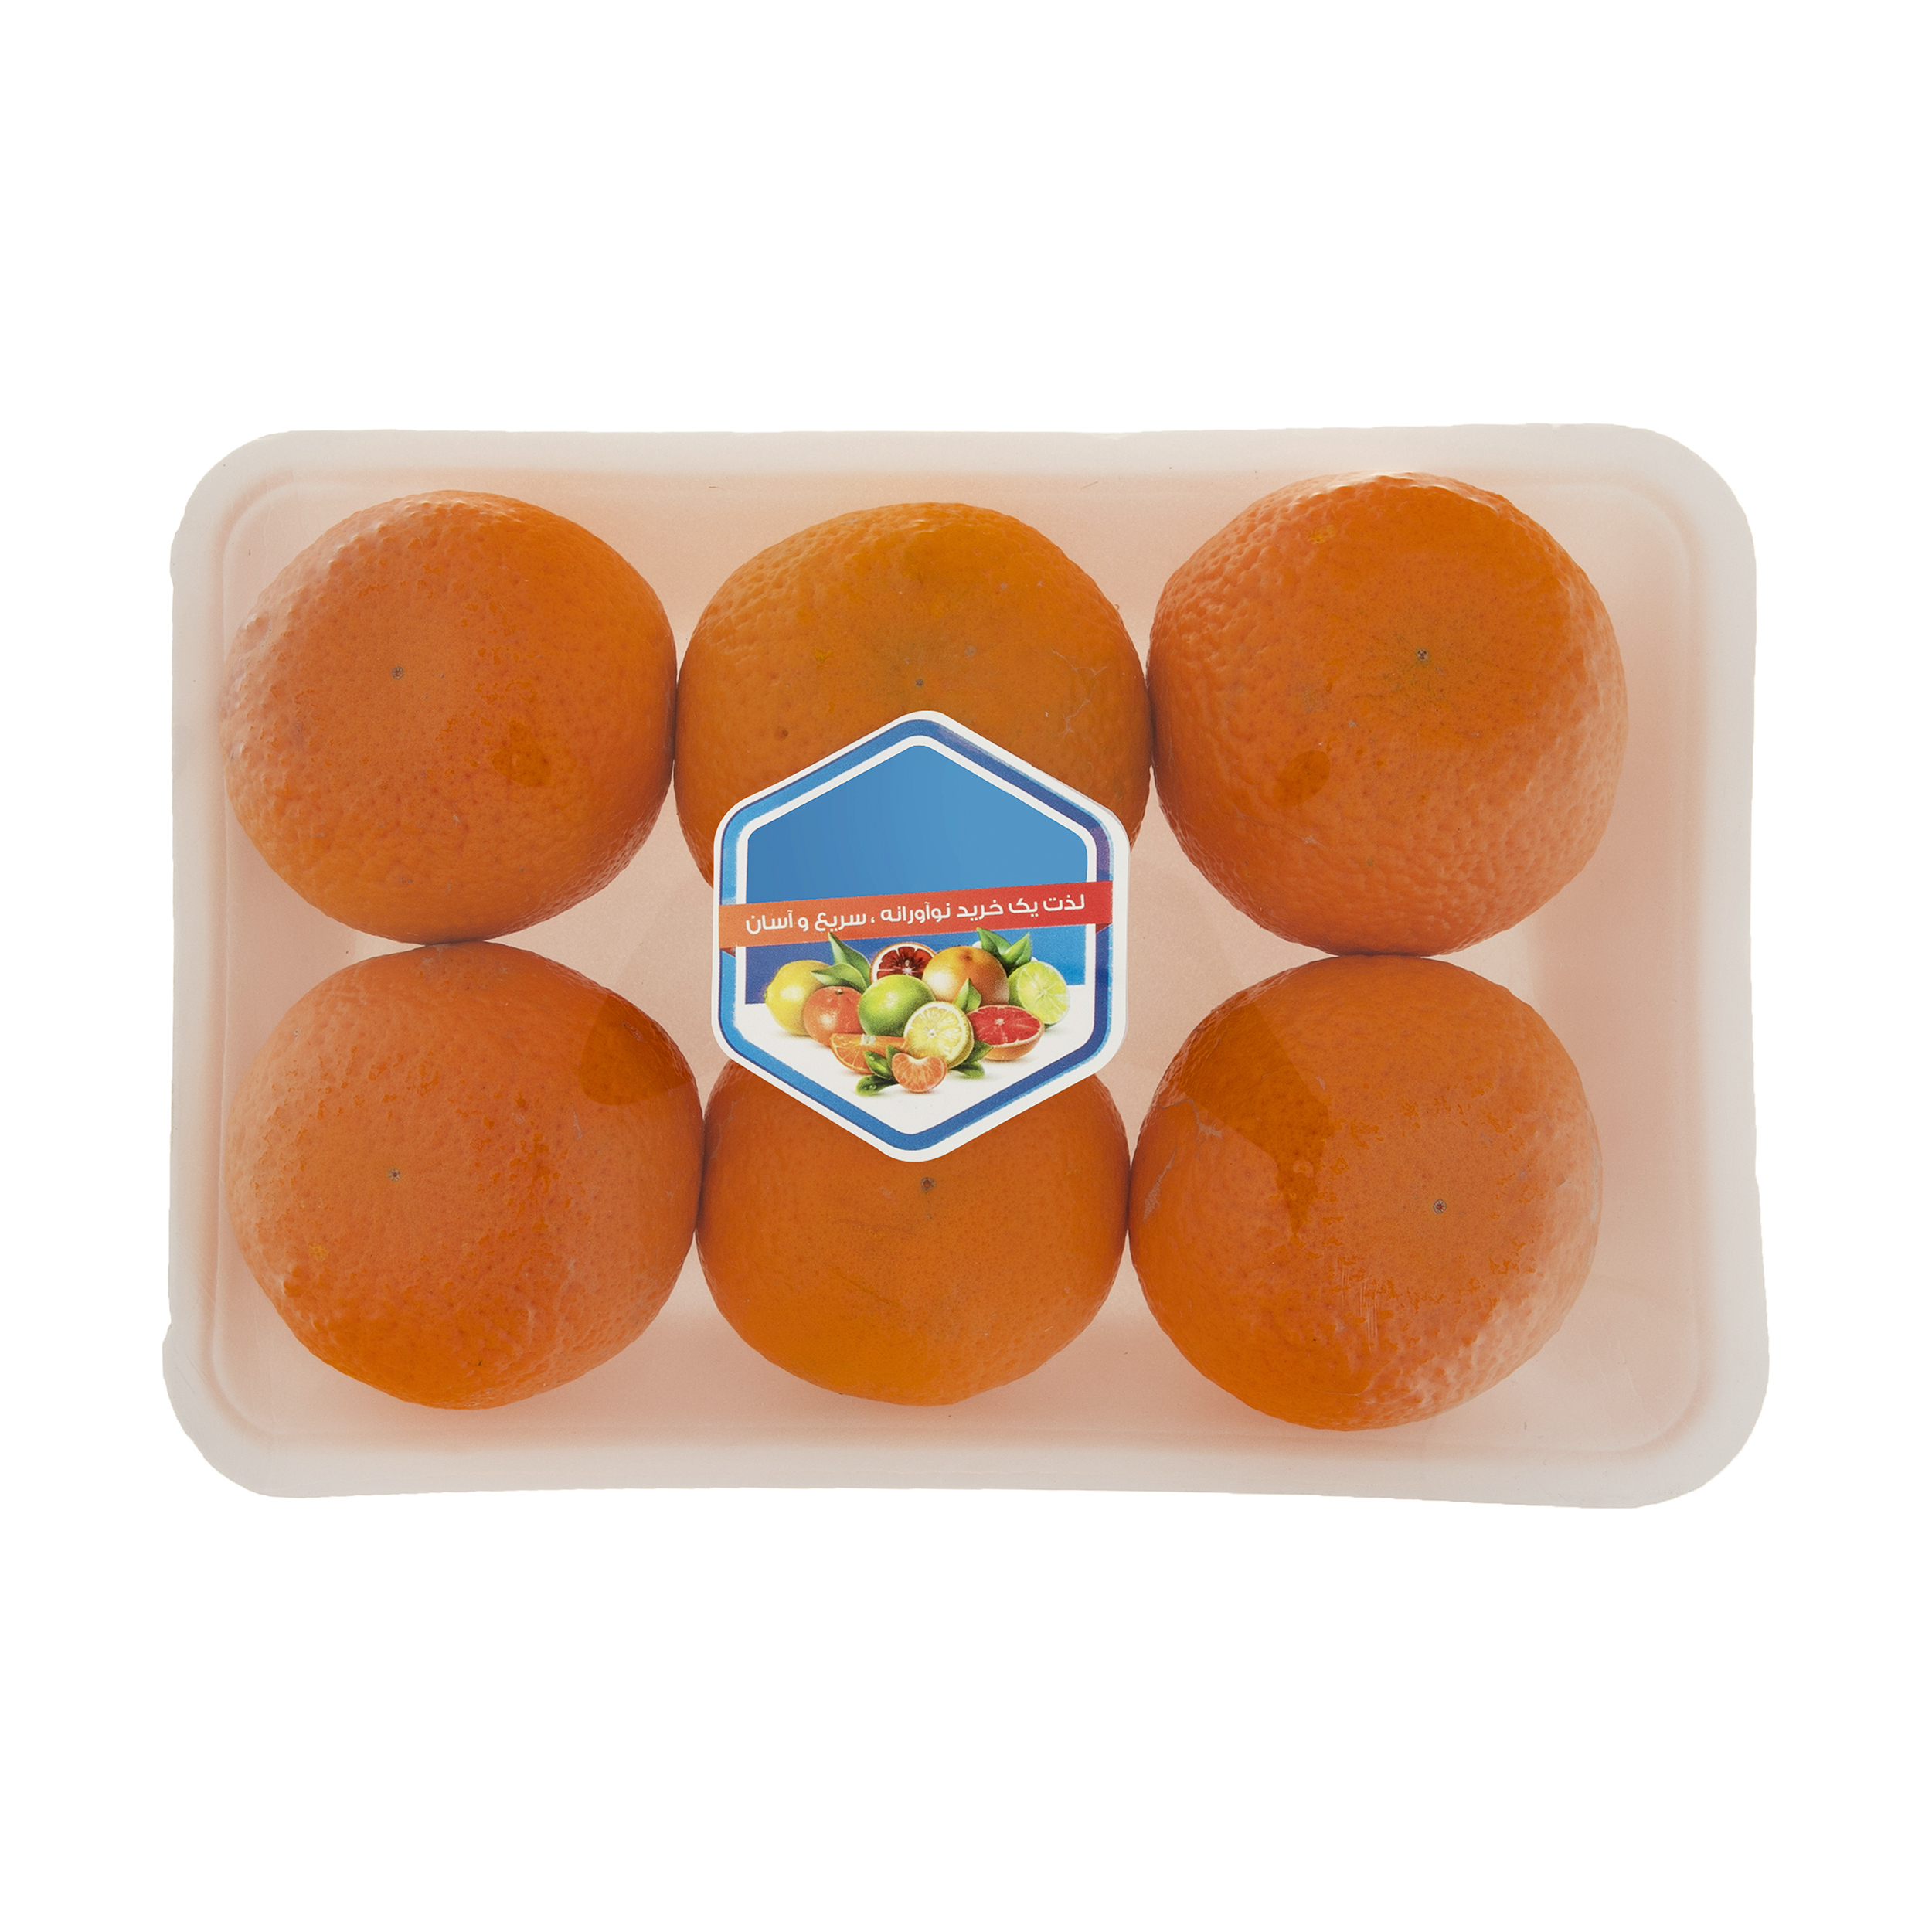 نارنگی کینو میوه پلاس - 1 کیلوگرم